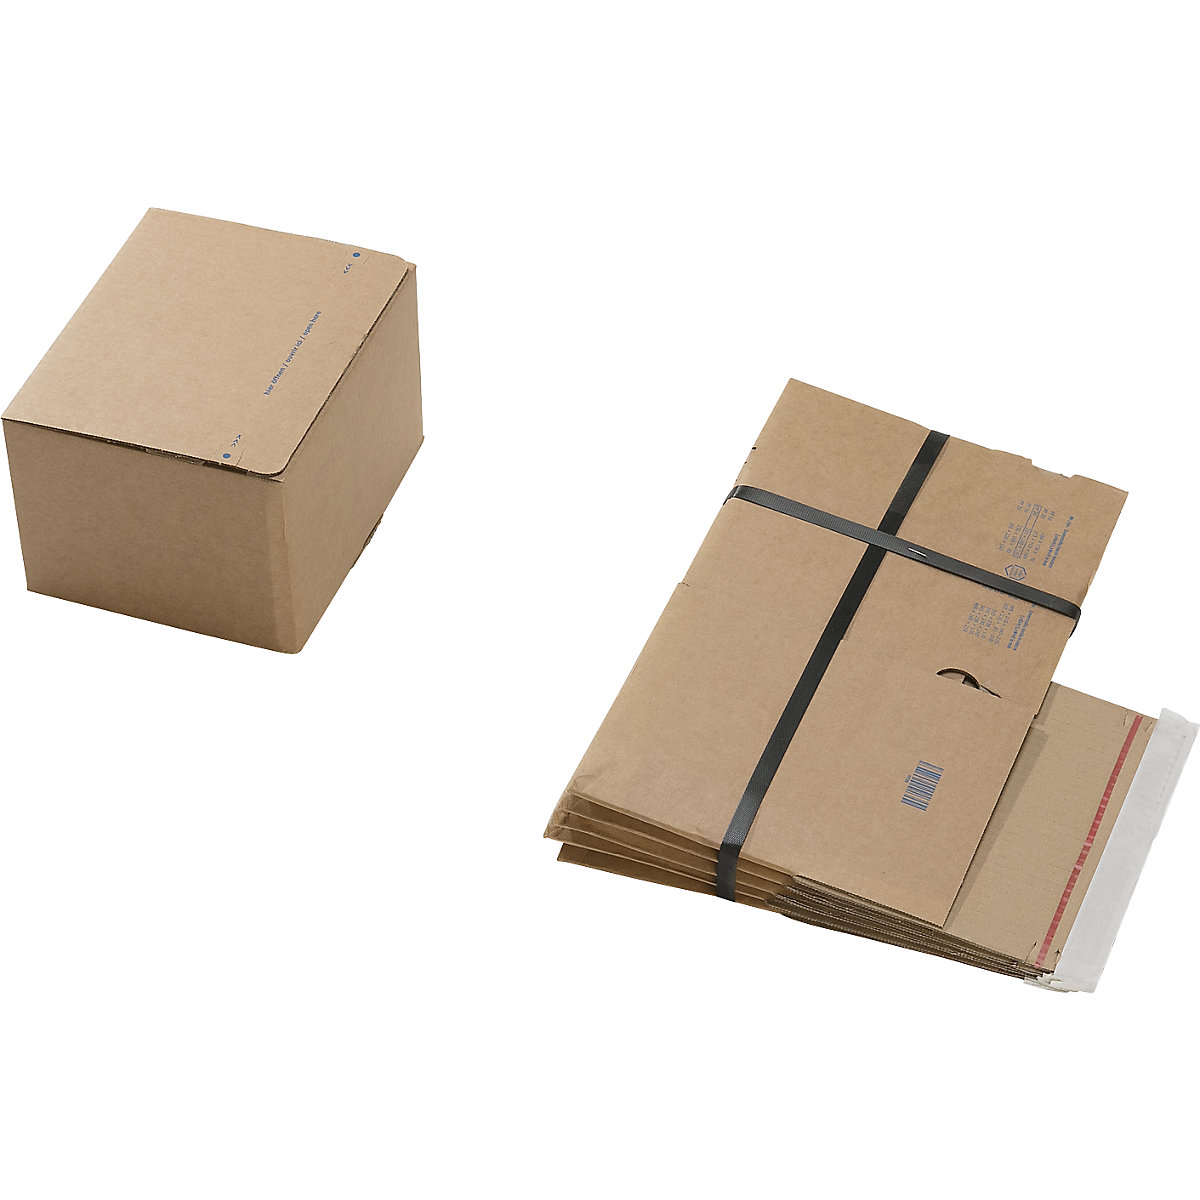 Cajas para envíos, con fondo preparado para montaje rápido y cierre autoadhesivo, dimensiones interiores L x A x H 210 x 180 x 130 mm, UE 100 unid.-3